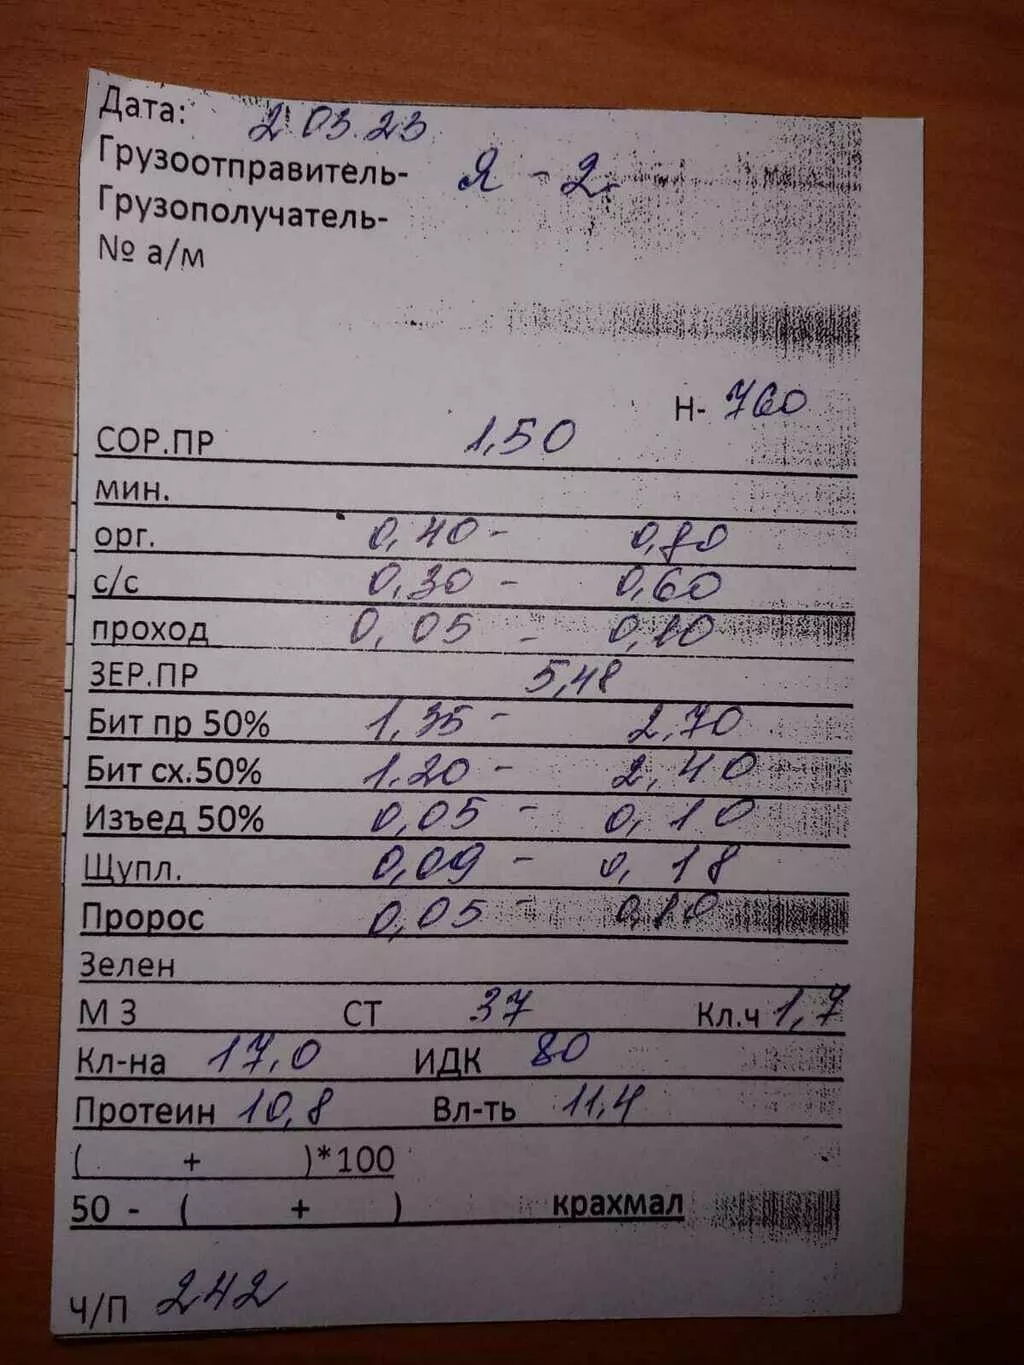 пшеница 5 класс 300тонн наличка  в Волгограде и Волгоградской области 2